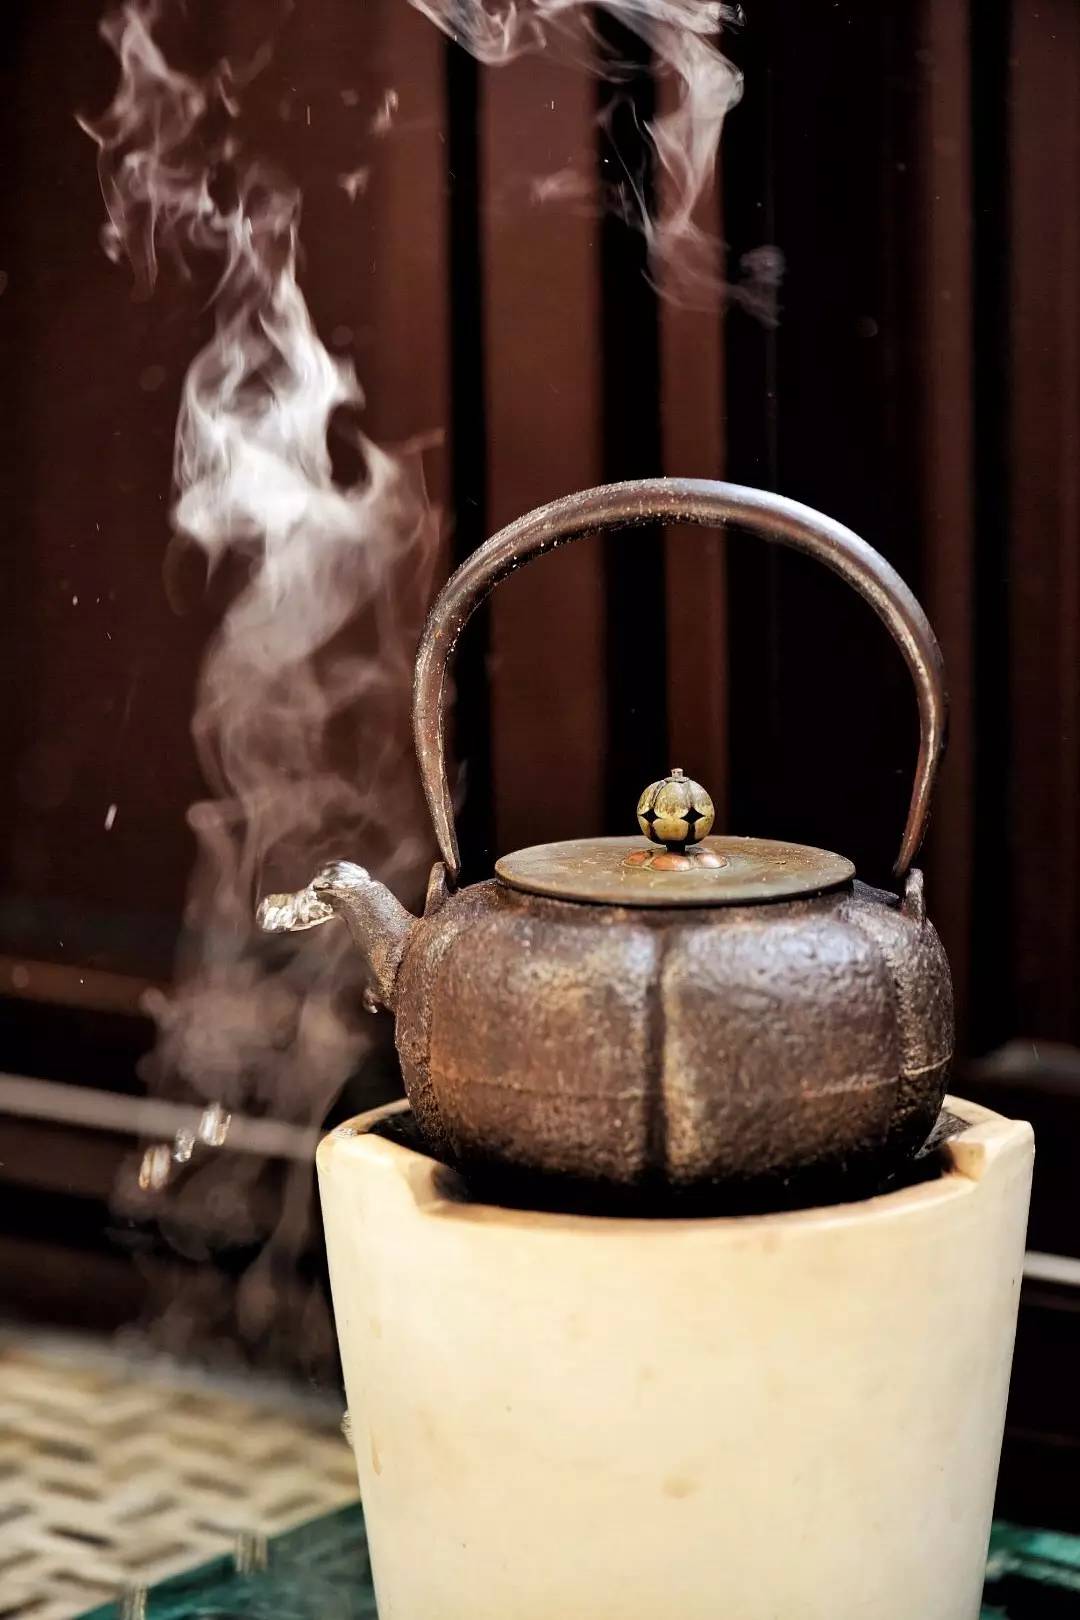 茶壶烧开水冒烟图片图片